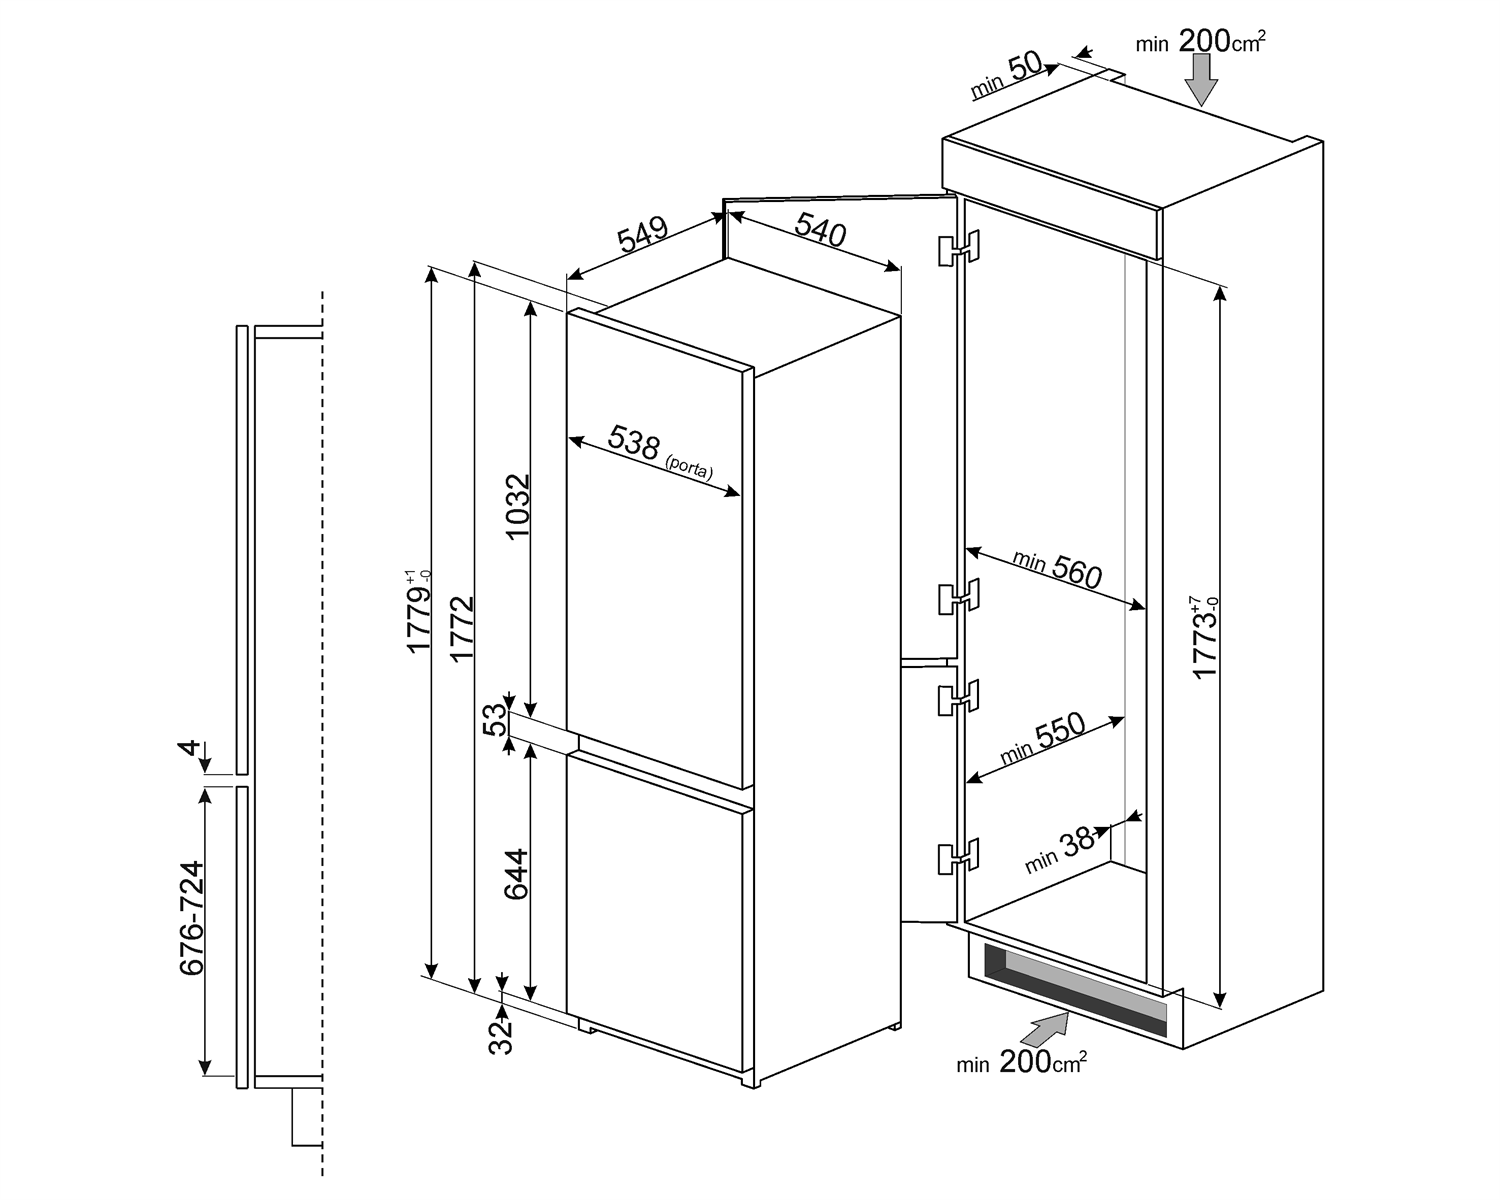 Maattekening SMEG koelkast inbouw C7280NEP1